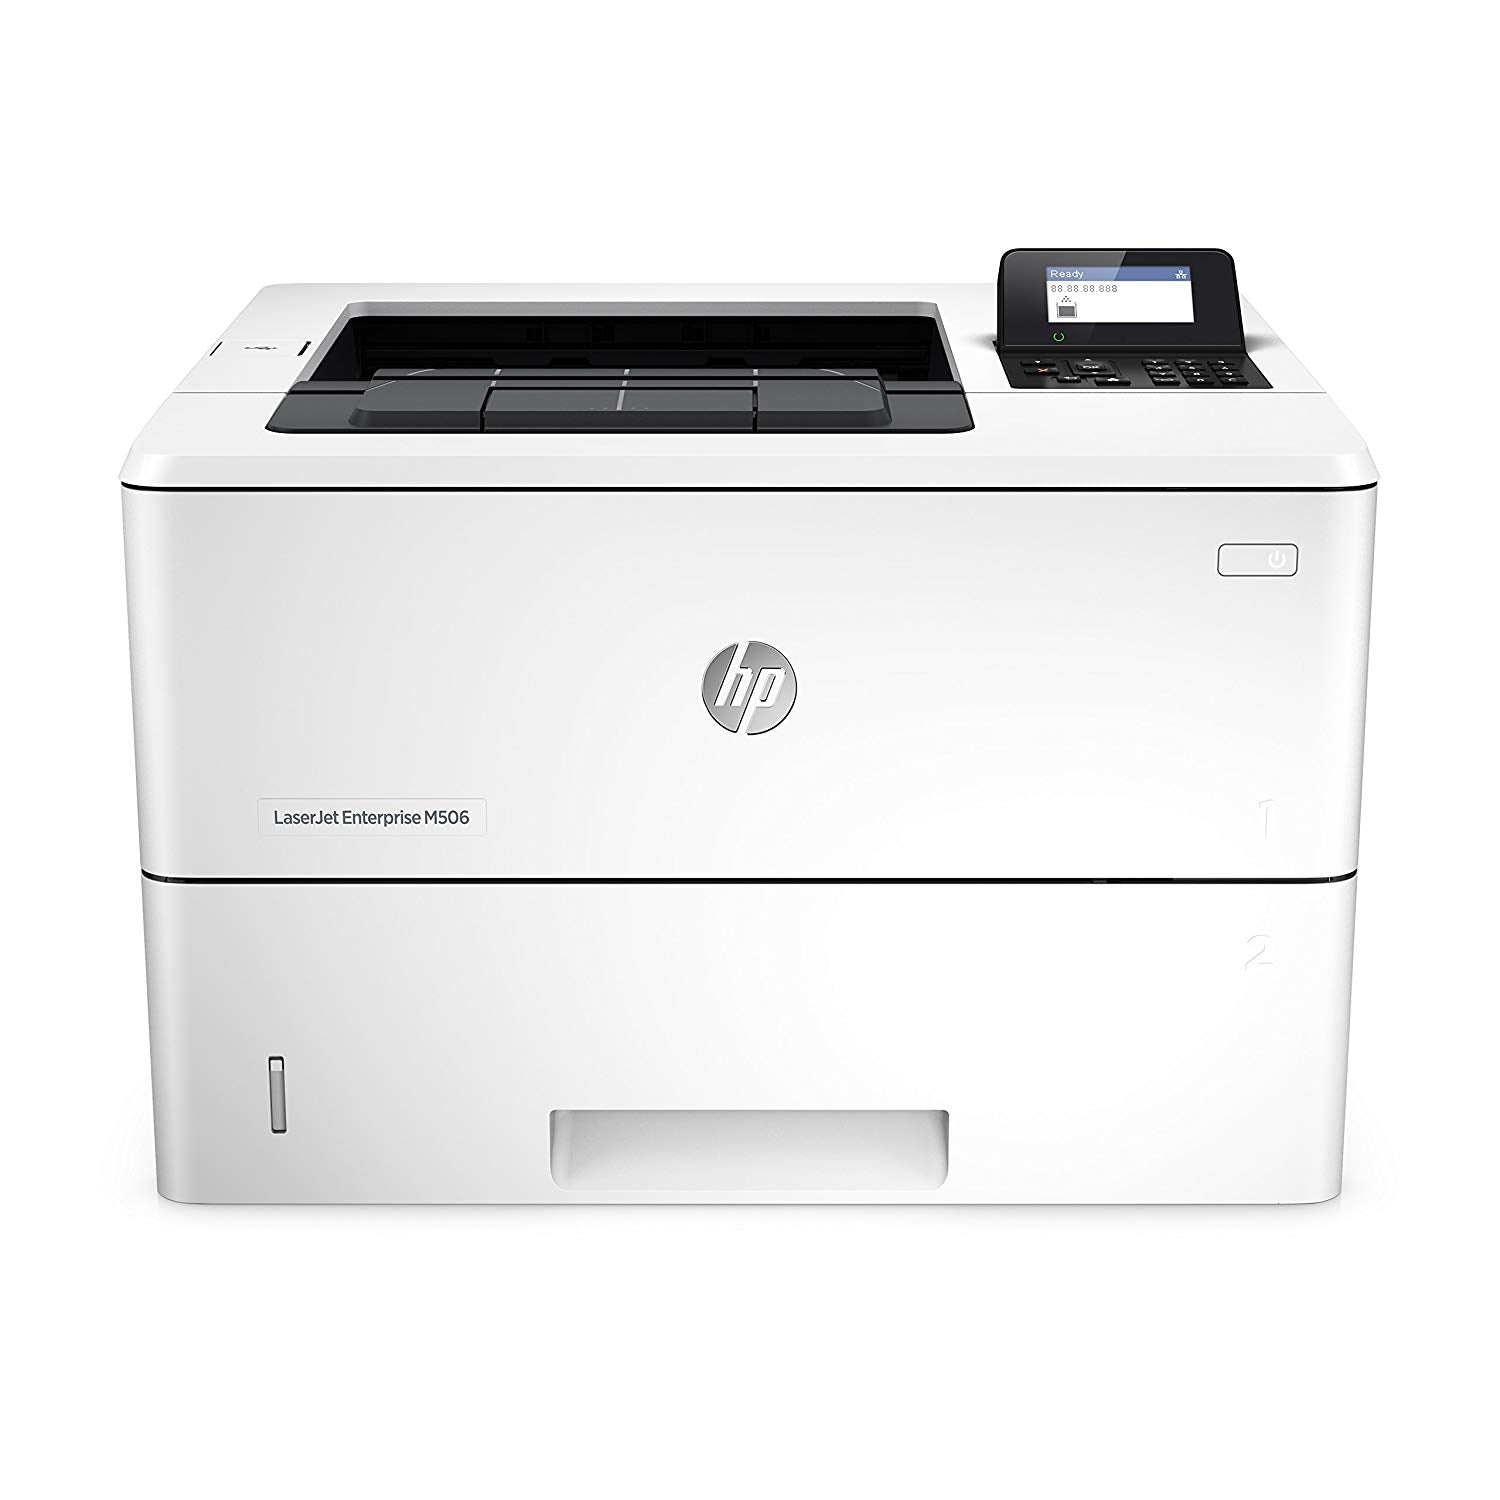 LaserJet Enterprise M506 A4 Mono Printer – Office Inc.